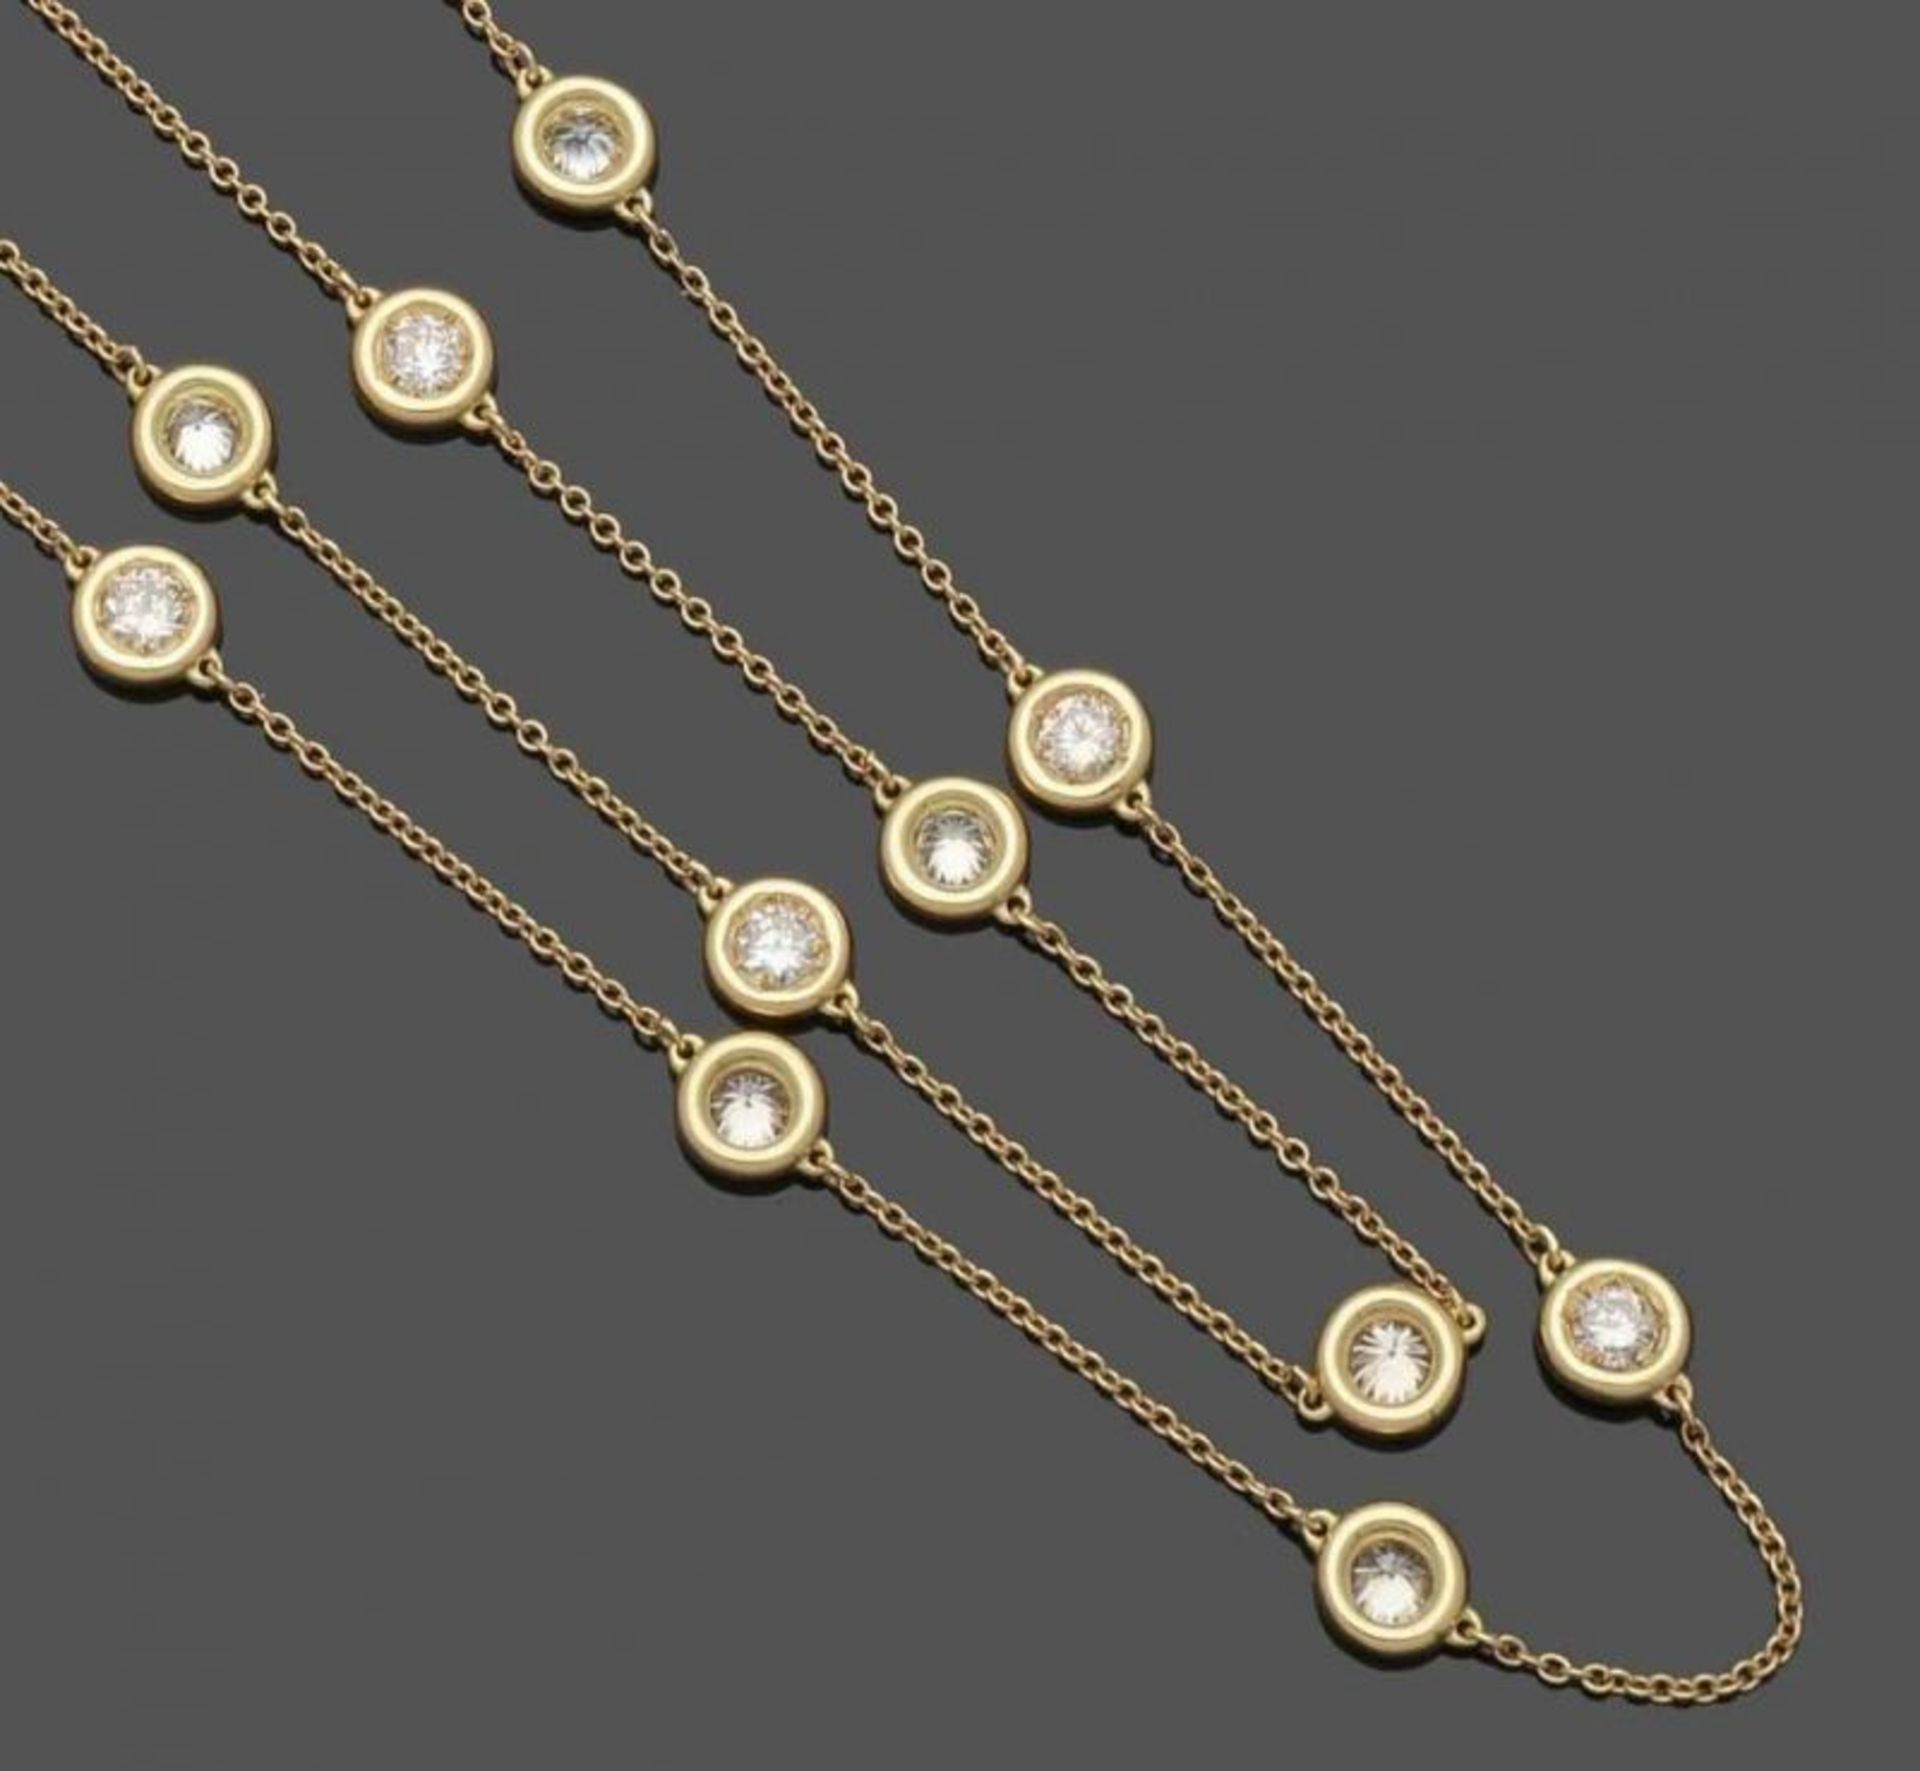 Langes Brillantcollier A long diamond necklace 750er GG, gestemp. 27 Brillanten zus. ca. 5,2 ct. - Bild 2 aus 4